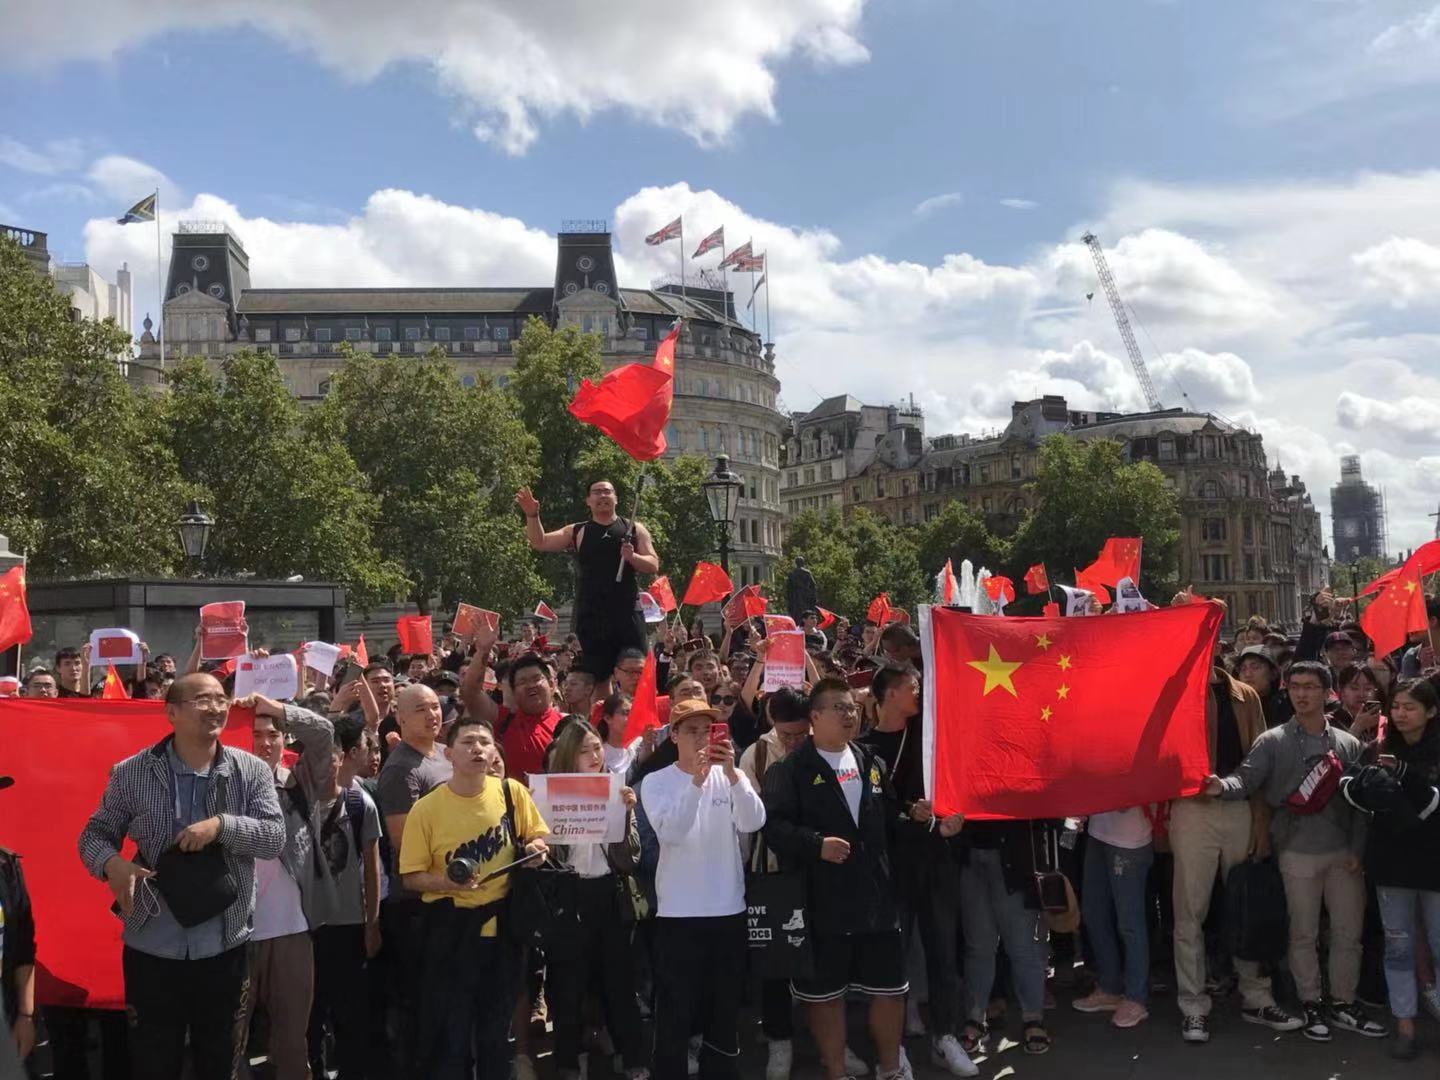 大批愛國留學生B華人華僑揮舞著五星紅旗A自發走上街頭抵制u告洋狀v 